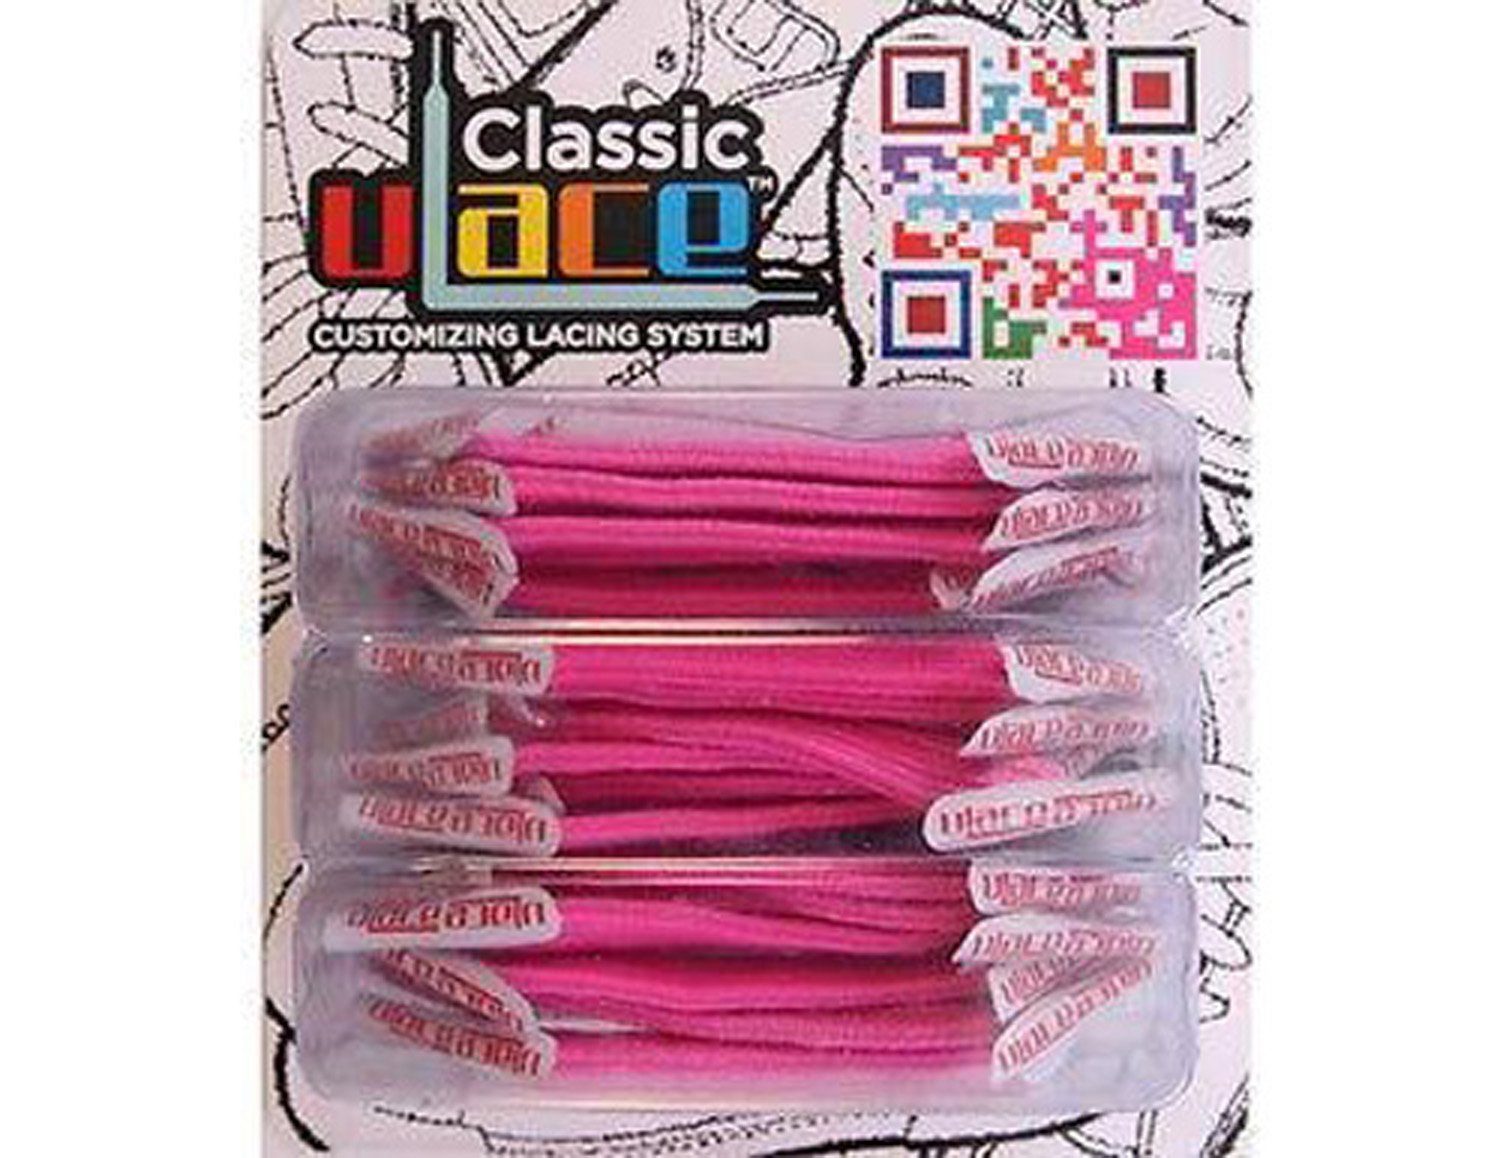 U-Laces Schnürsenkel Classic 18 Stück - elastische Schnürsenkel mit Wiederhaken Hot Pink